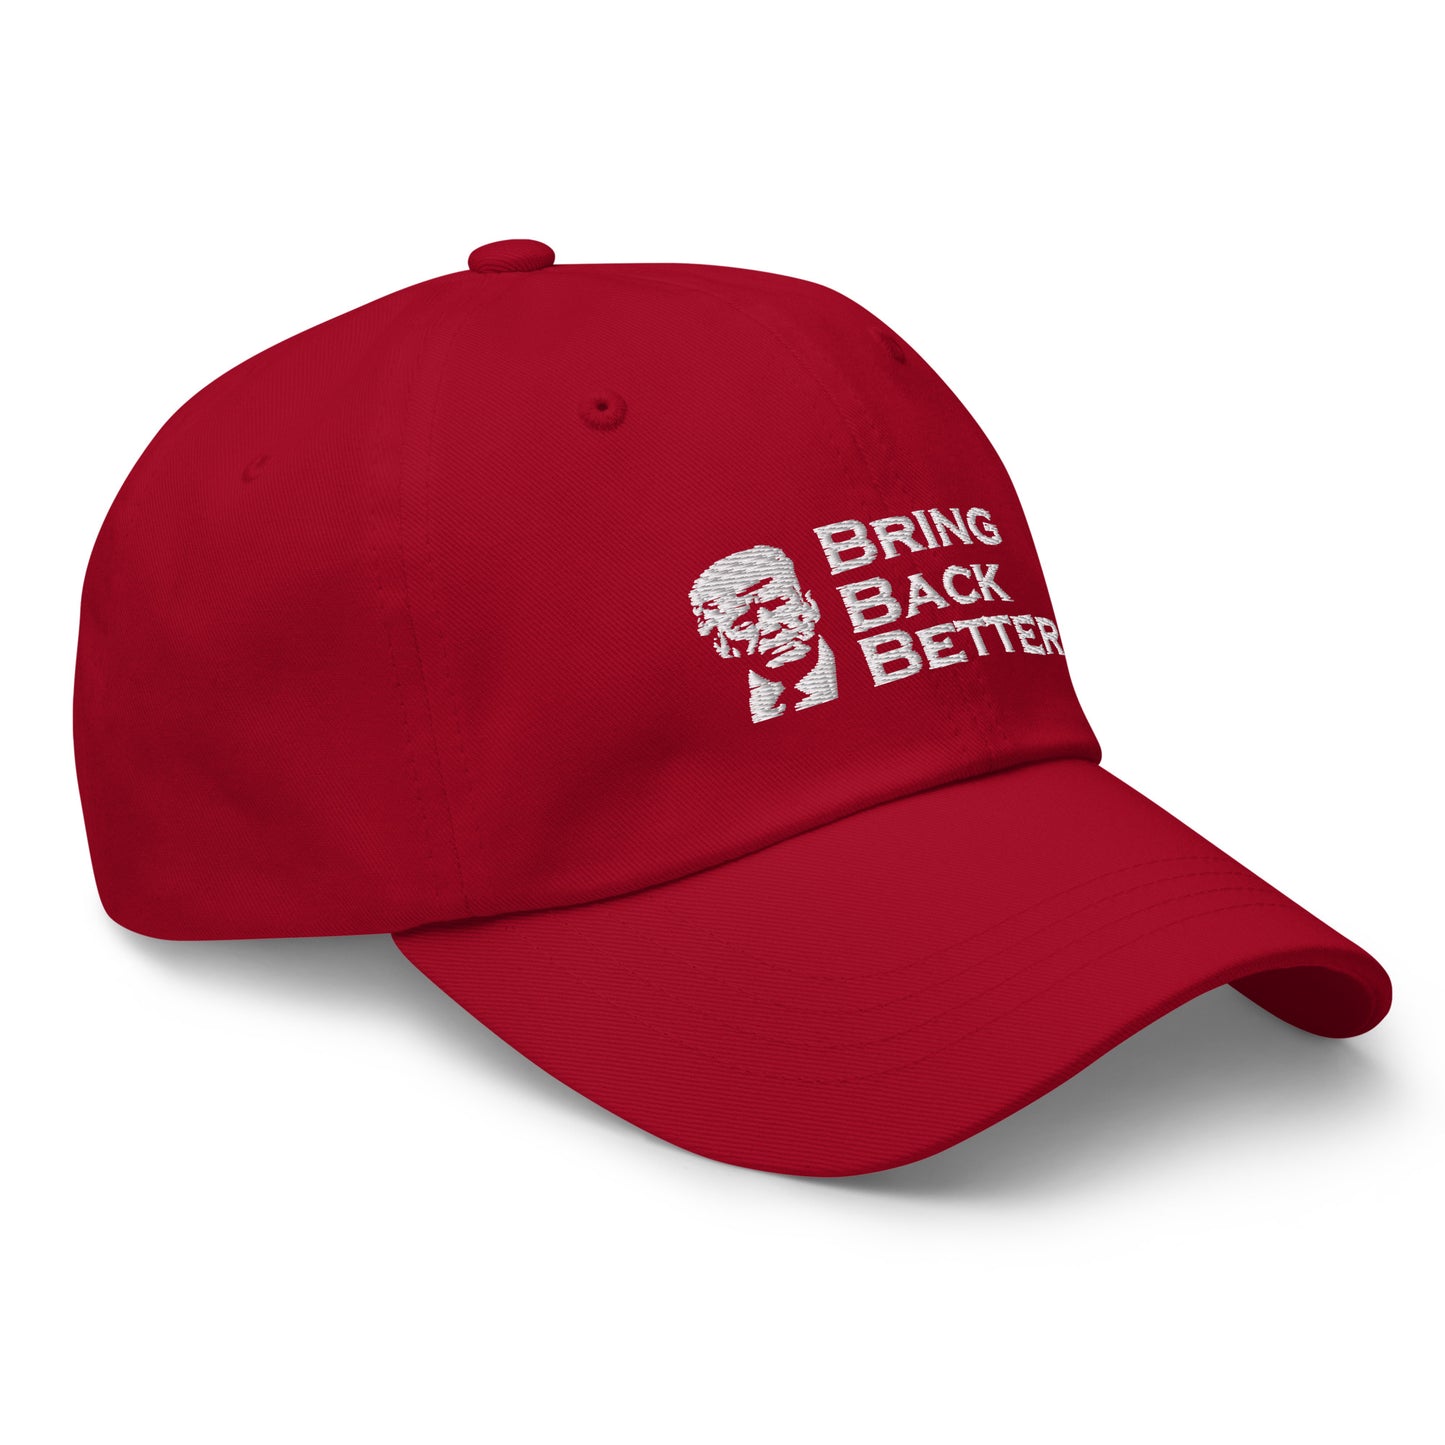 Bring Back Better hat